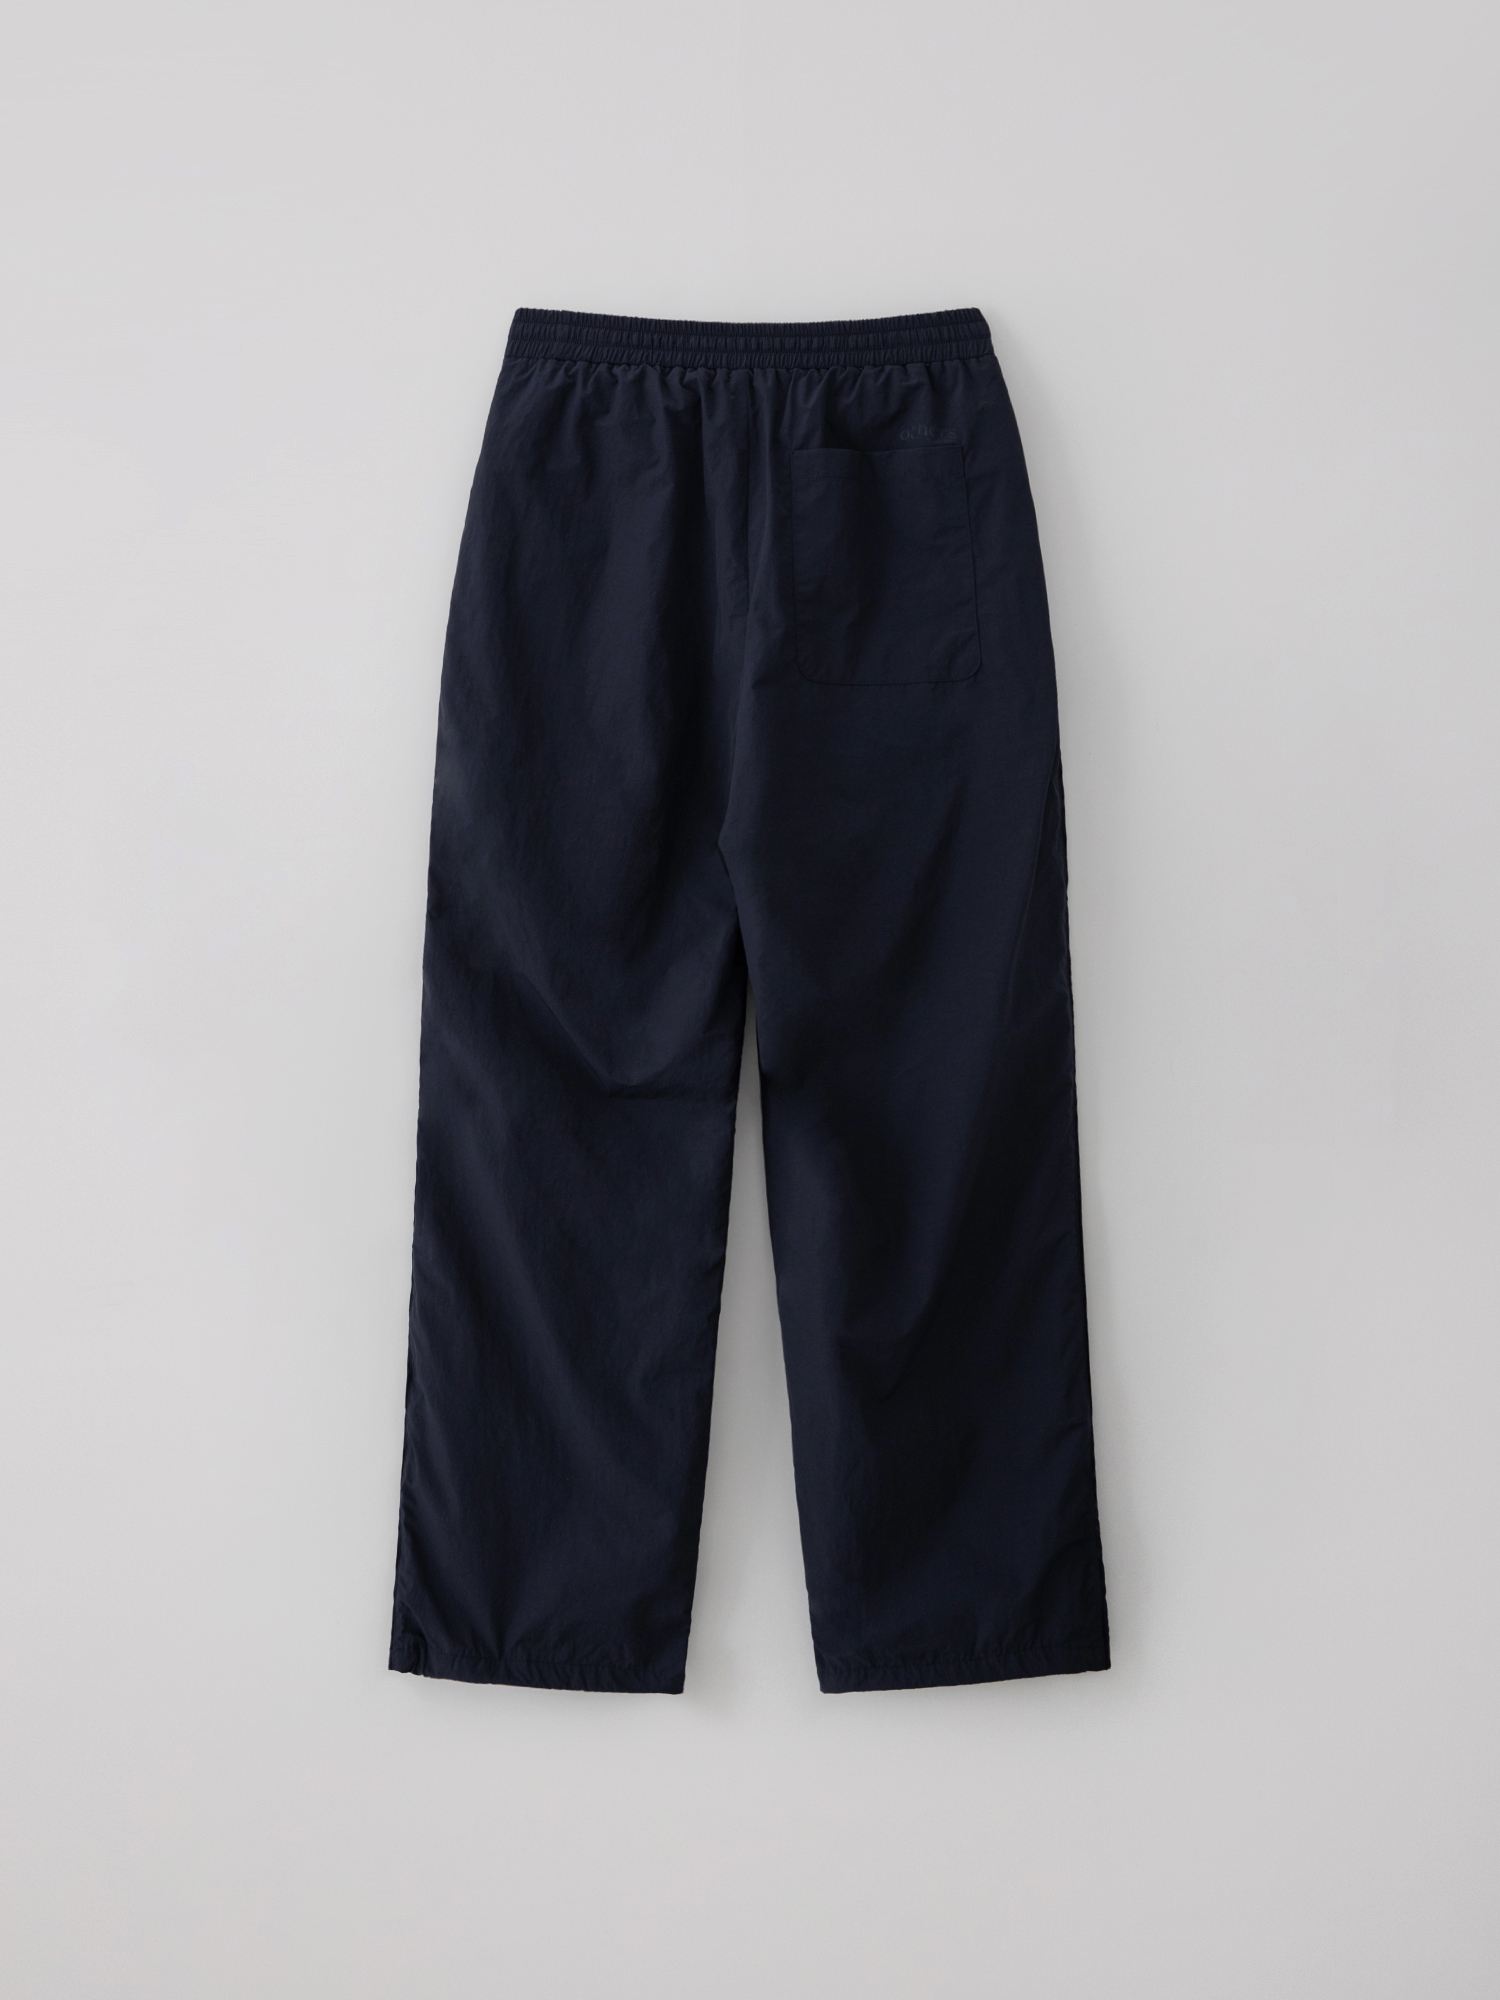 [2nd reorder] Parachute pants (navy)